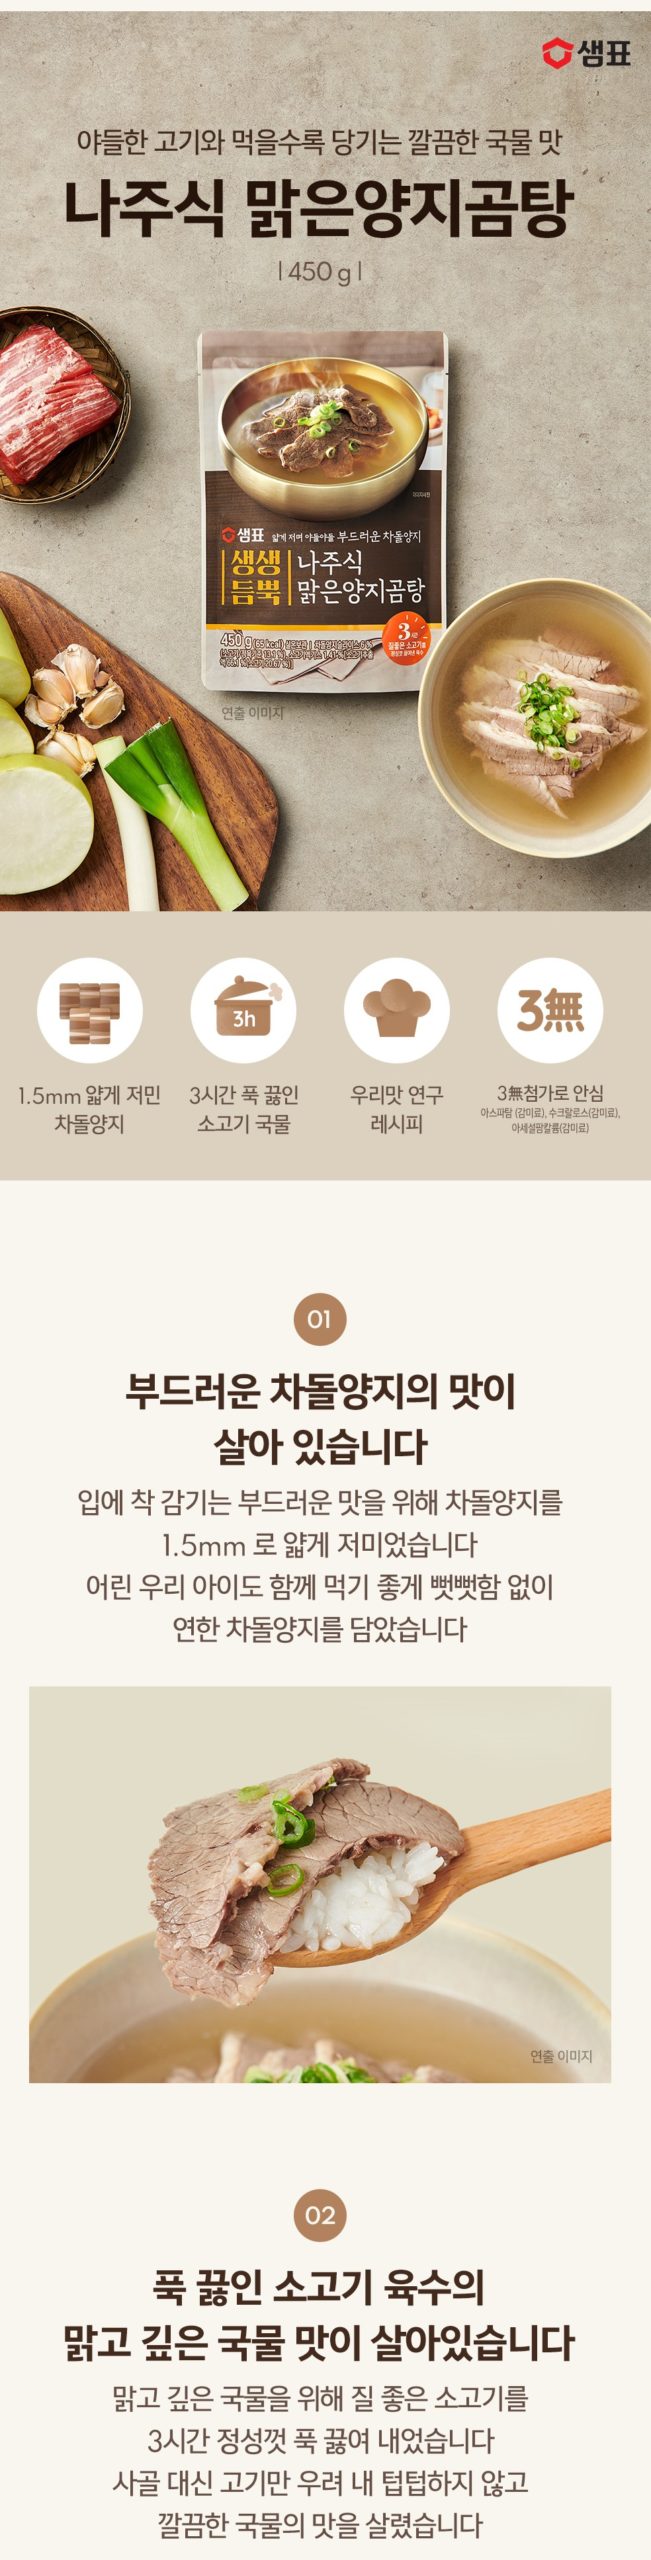 韓國食品-[샘표] 생생듬뿍 나주식 맑은양지곰탕 450g